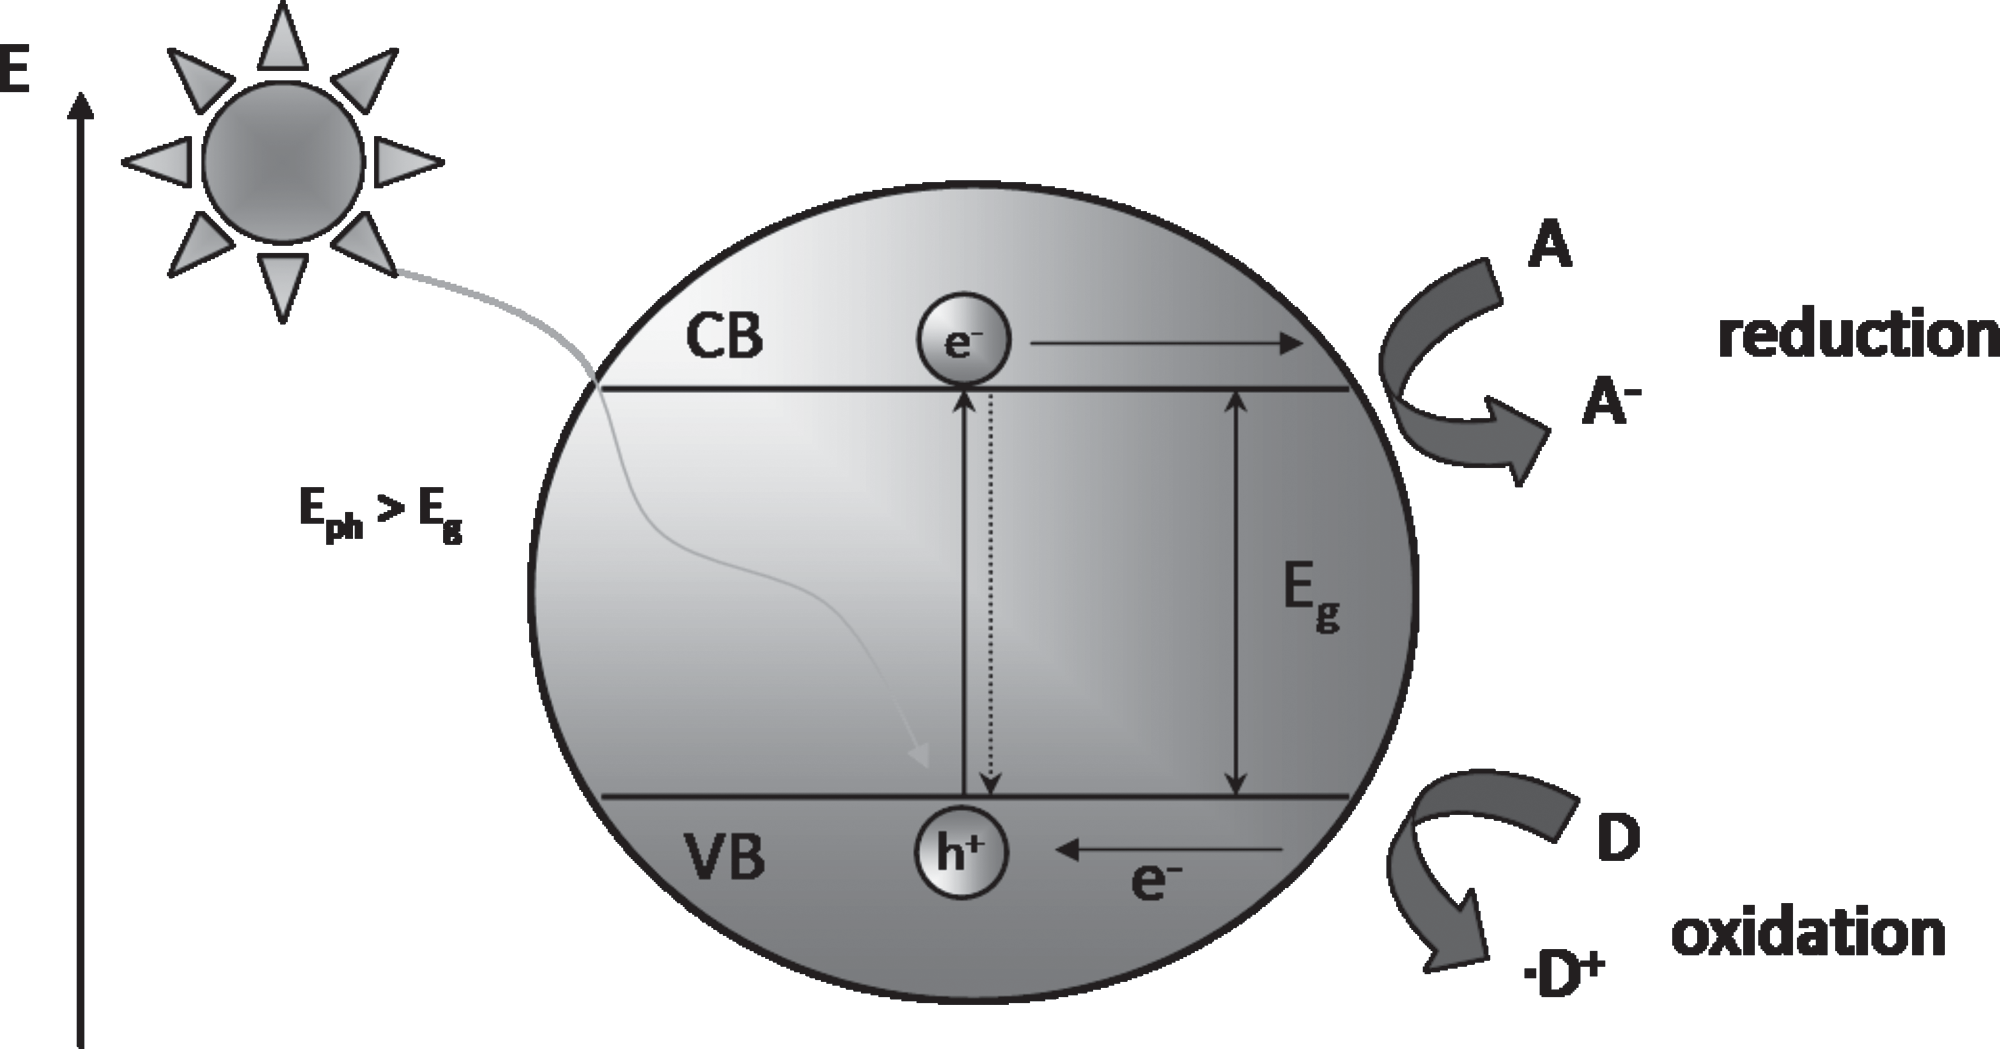 διαδρομές και να μεταφερθούν στη επιφάνεια του ημιαγωγού, όπου μπορούν να αντιδράσουν με μόρια τα οποία έχουν προσροφηθεί στην επιφάνεια του καταλύτη (Parsons, 2004). Σχήμα Α.